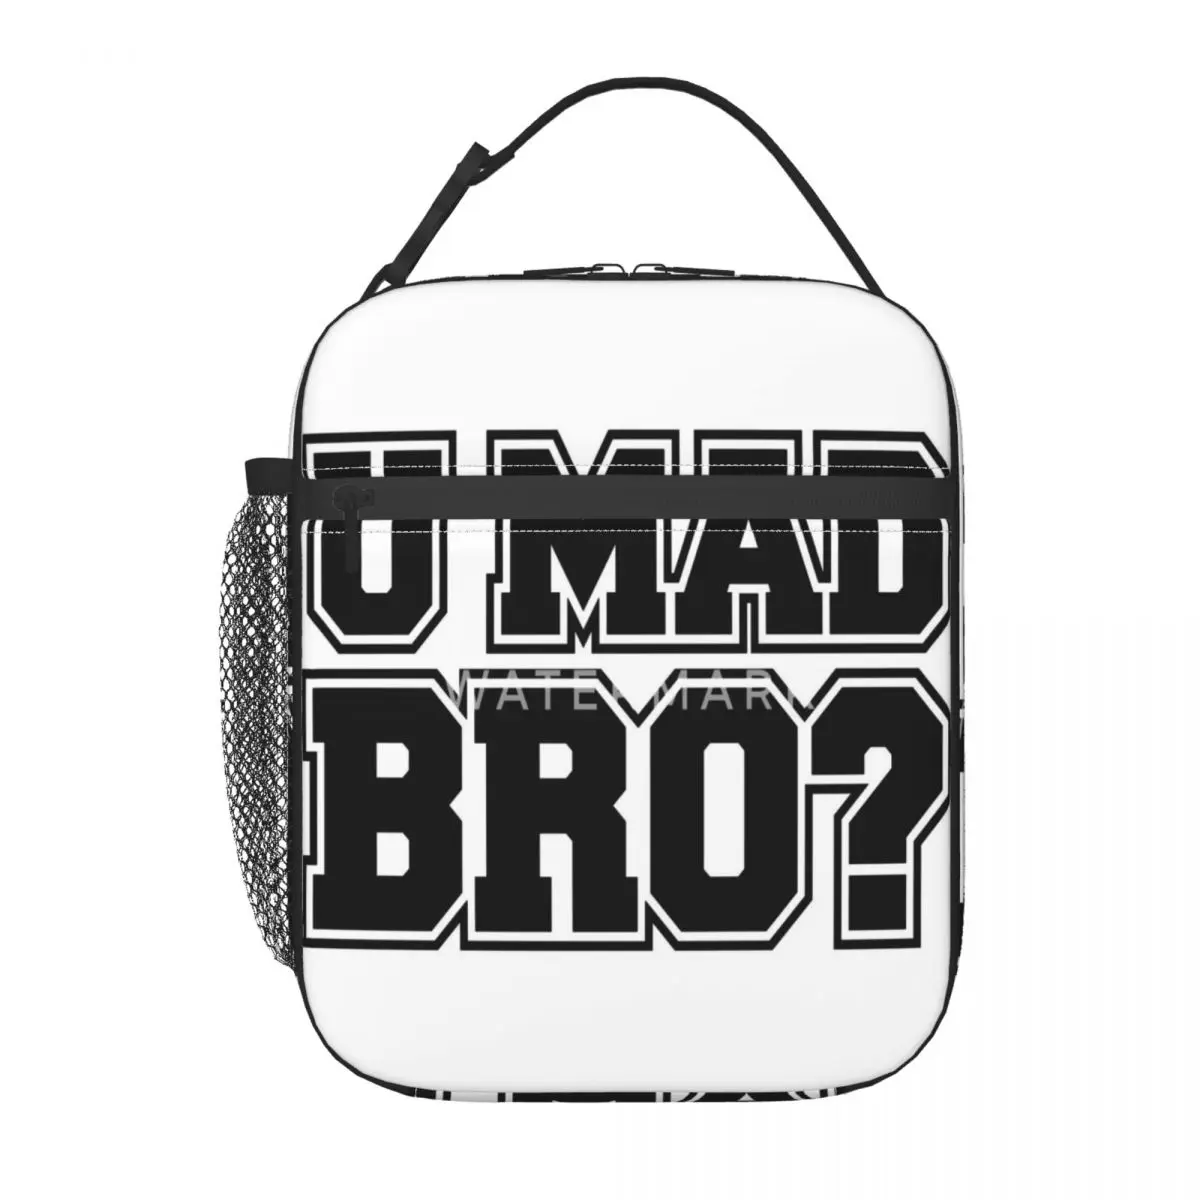 

U Mad Bro изолированная сумка для ланча модная прочная ежедневная изолированная сумка для ланча настраиваемая